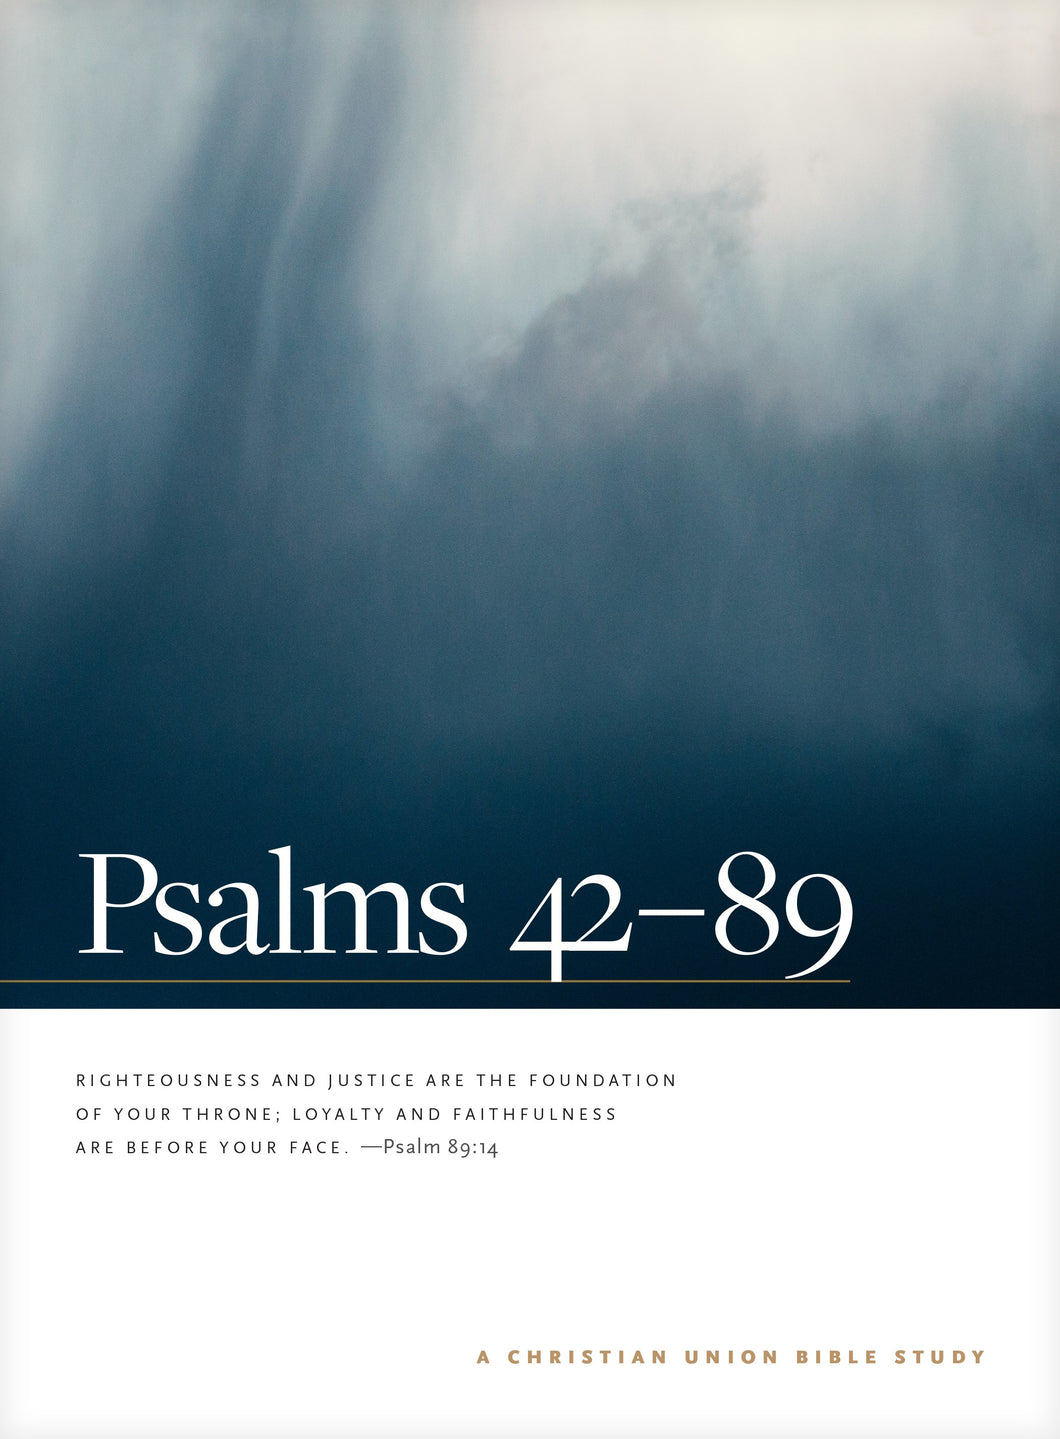 Psalms 42--89: A Christian Union Bible Study